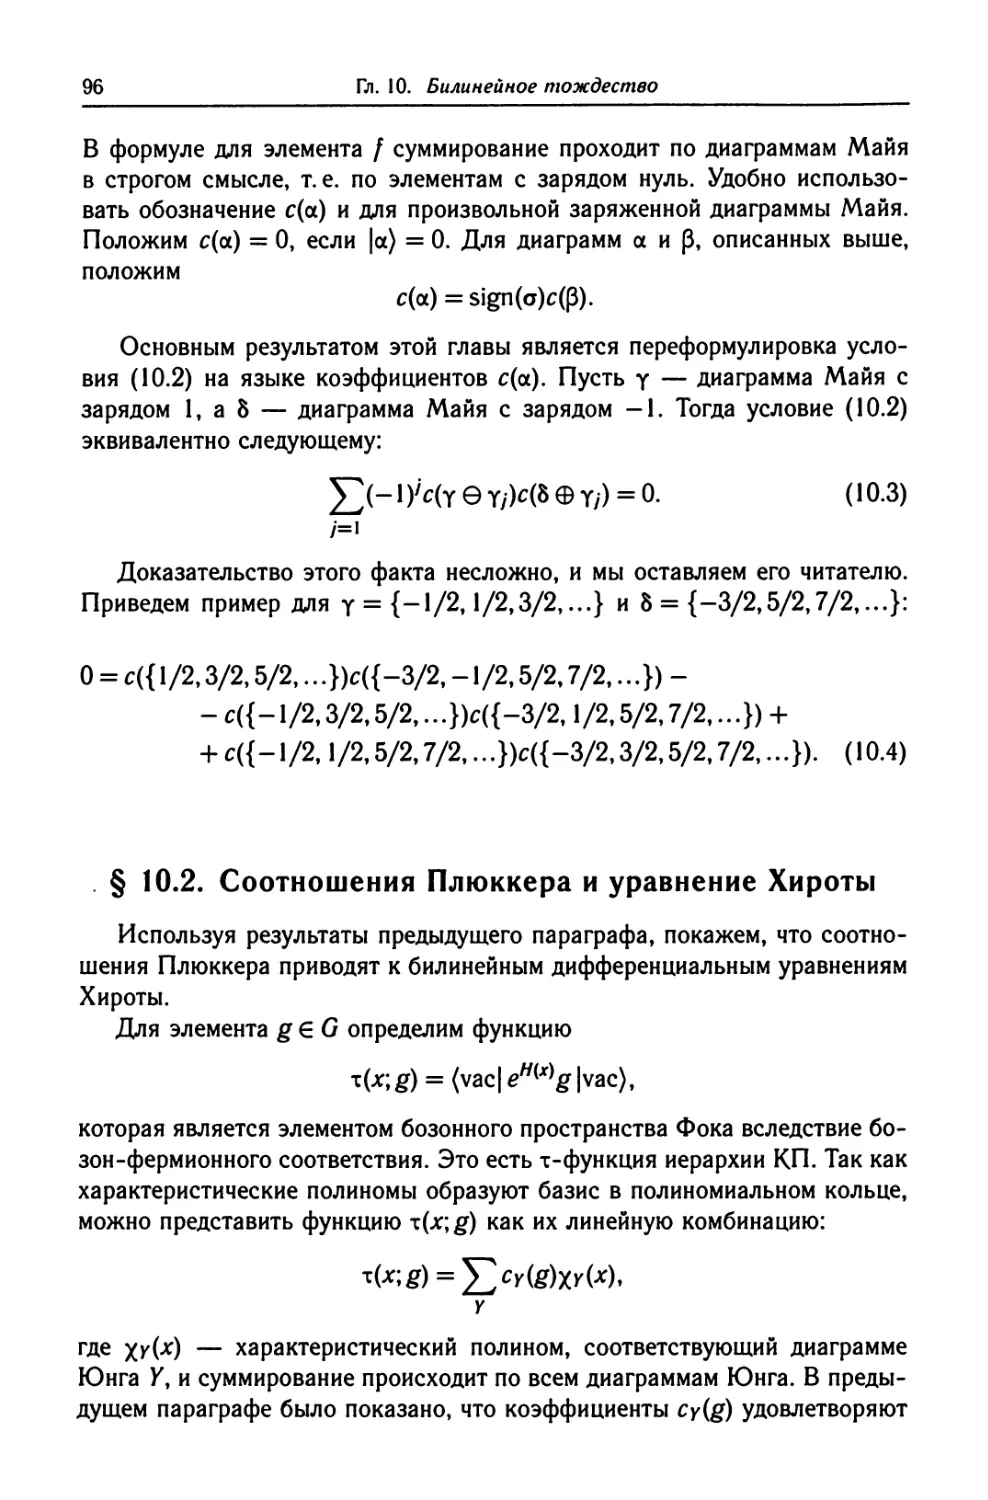 § 10.2. Соотношения Плюккера и уравнение Хироты